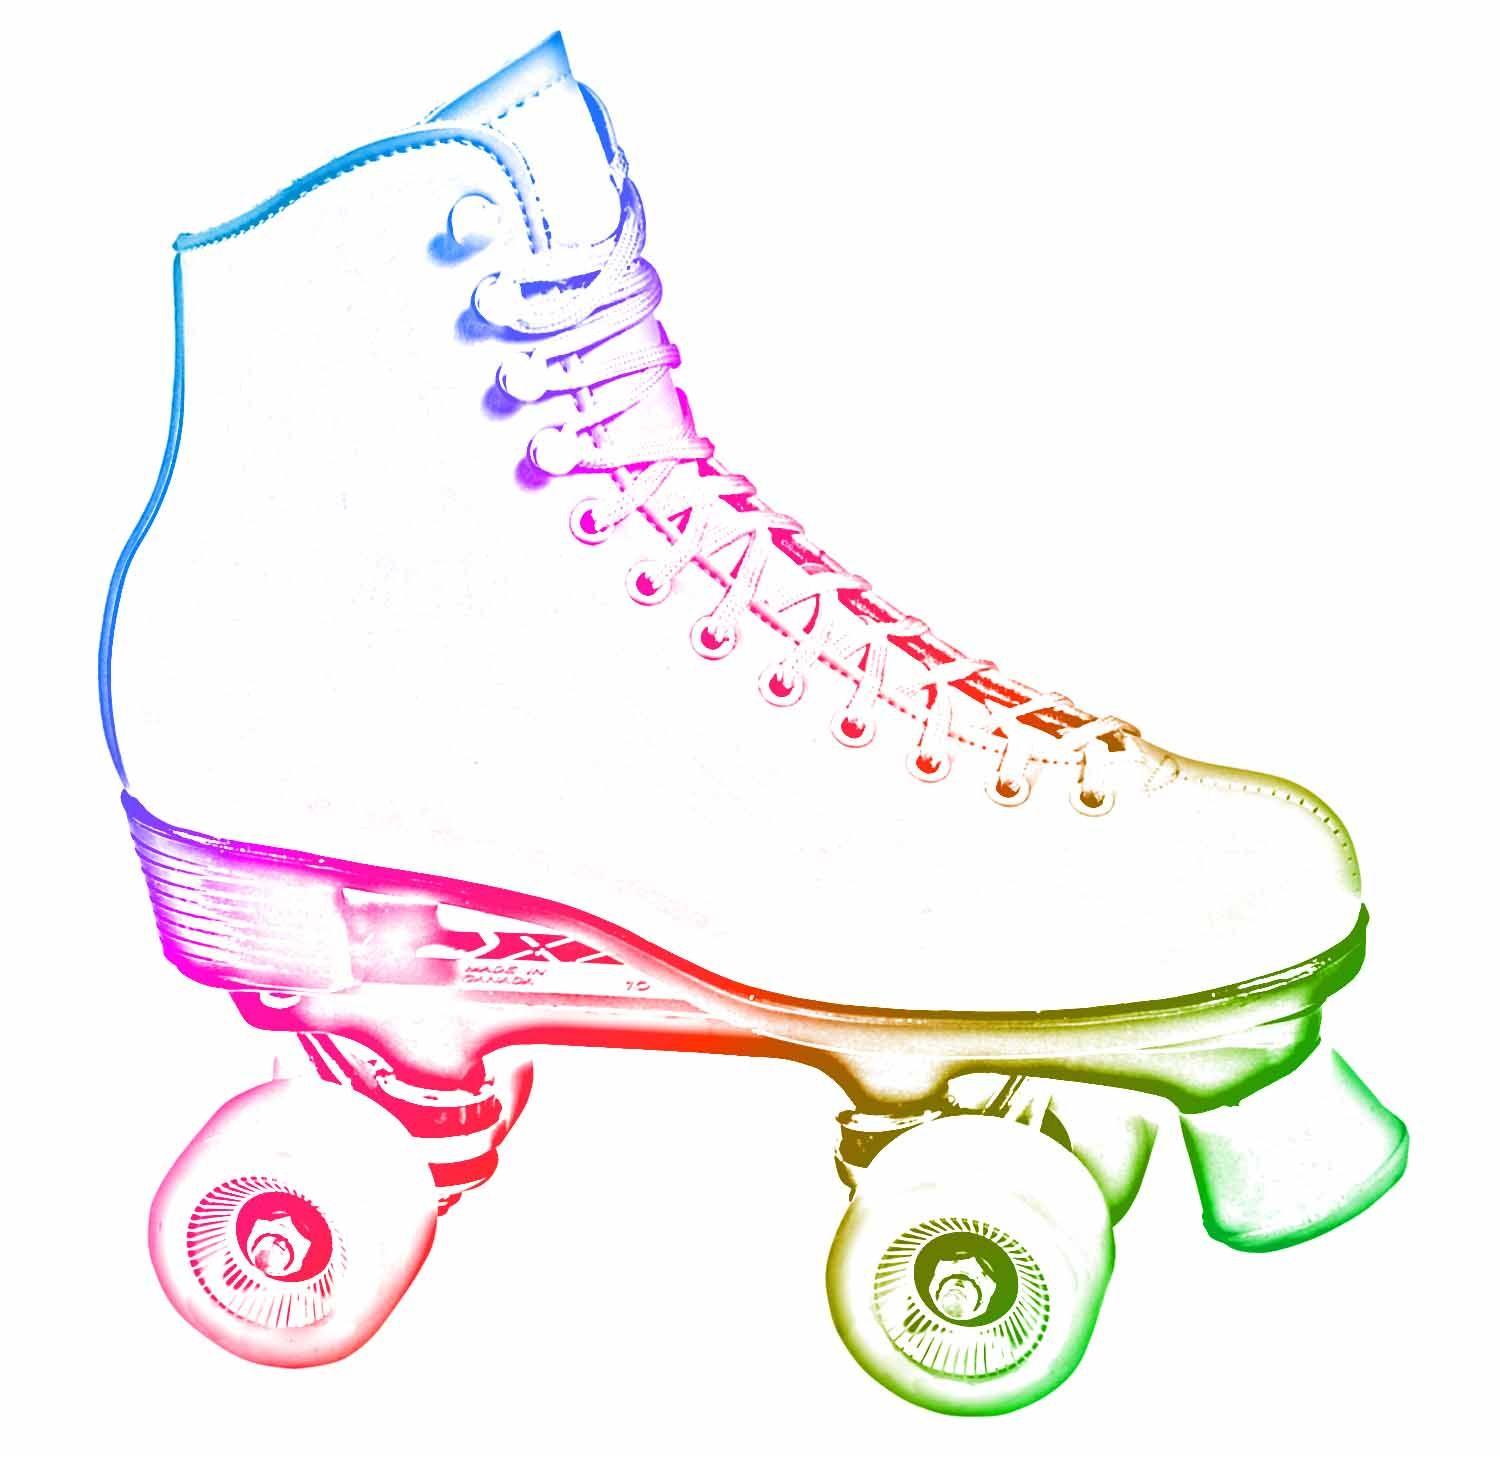 Roller Skate Logo - A Guide To Create Your Own Custom Roller Skates - Skate Talk